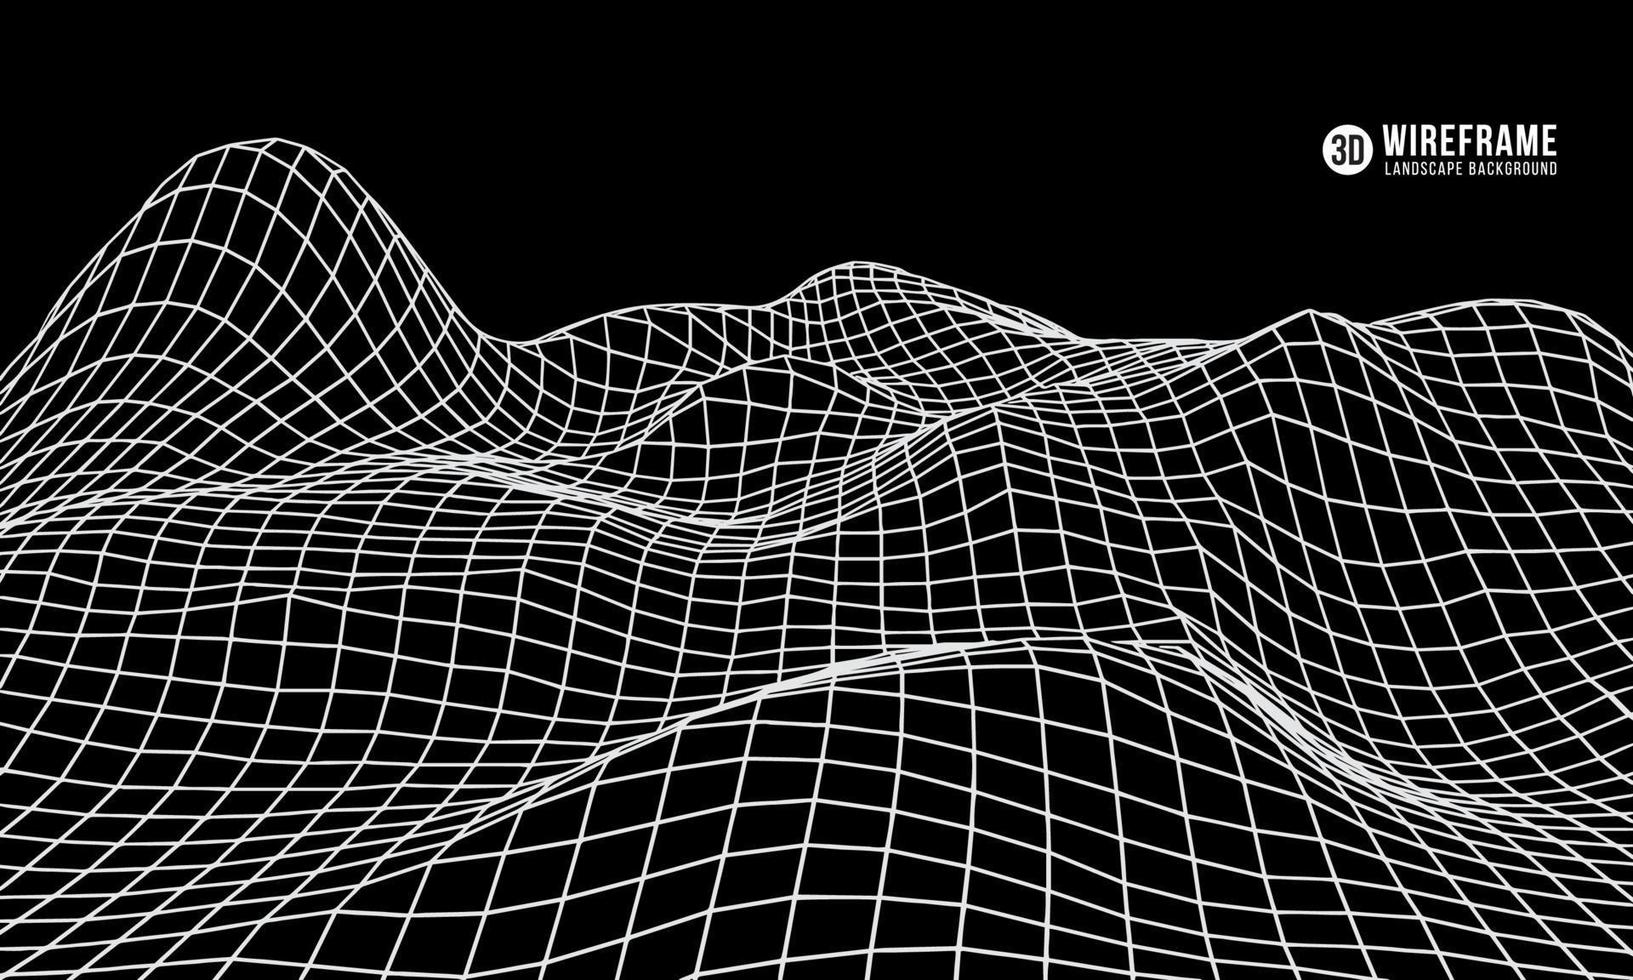 Terreno di montagna wireframe 3D su sfondo nero. paesaggio di montagna geometrica low poly. Griglia del cyberspazio 3D. vettore di tecnologia.